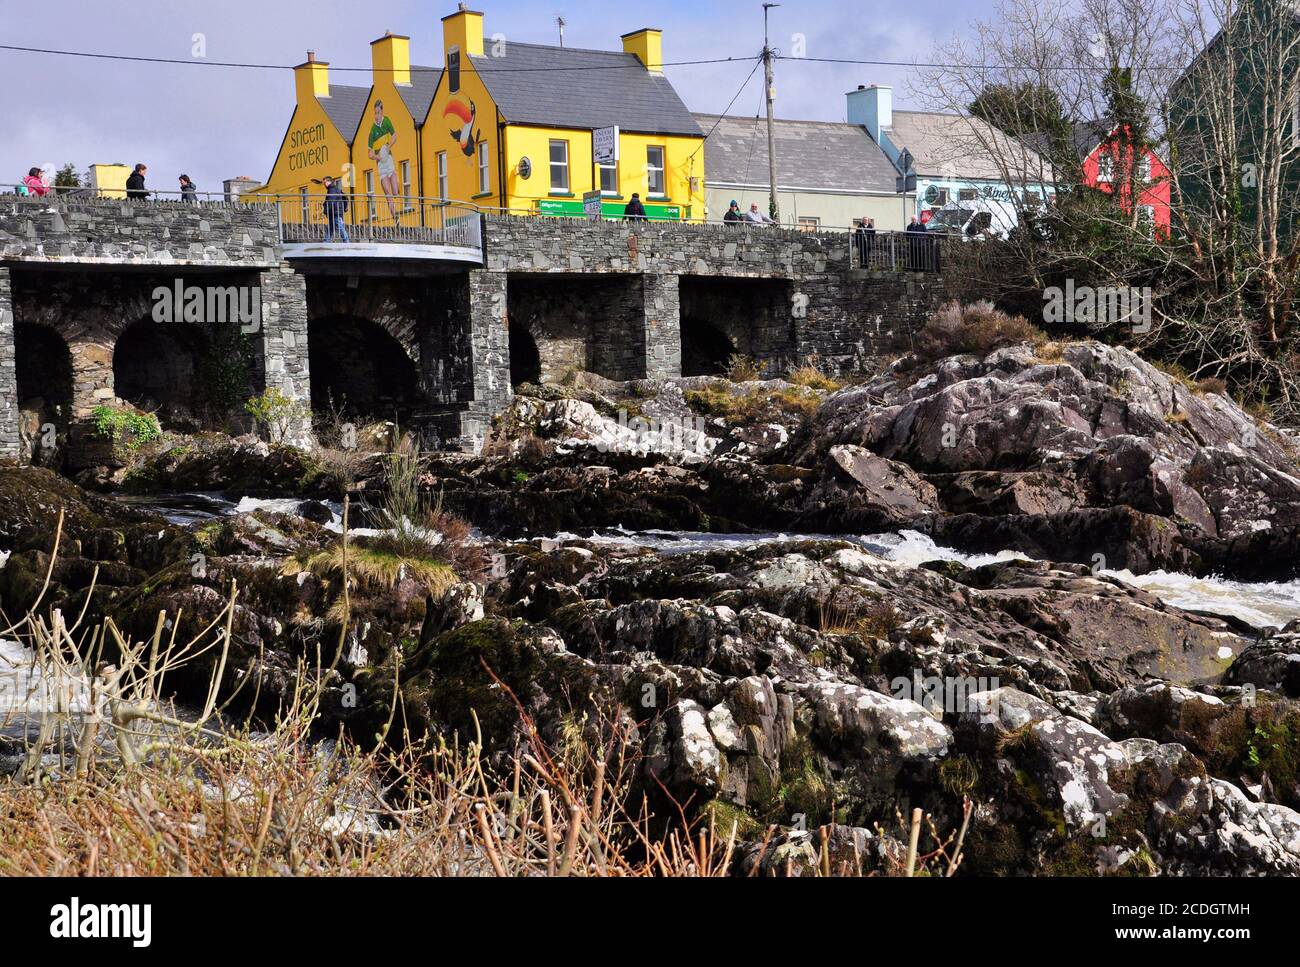 Hell bemalte Taverne im Dorf Sneem mit dem Wasserfall auf dem Fluss Sneem im Vordergrund. Iveragh Halbinsel, Grafschaft Kerry in Irland Stockfoto